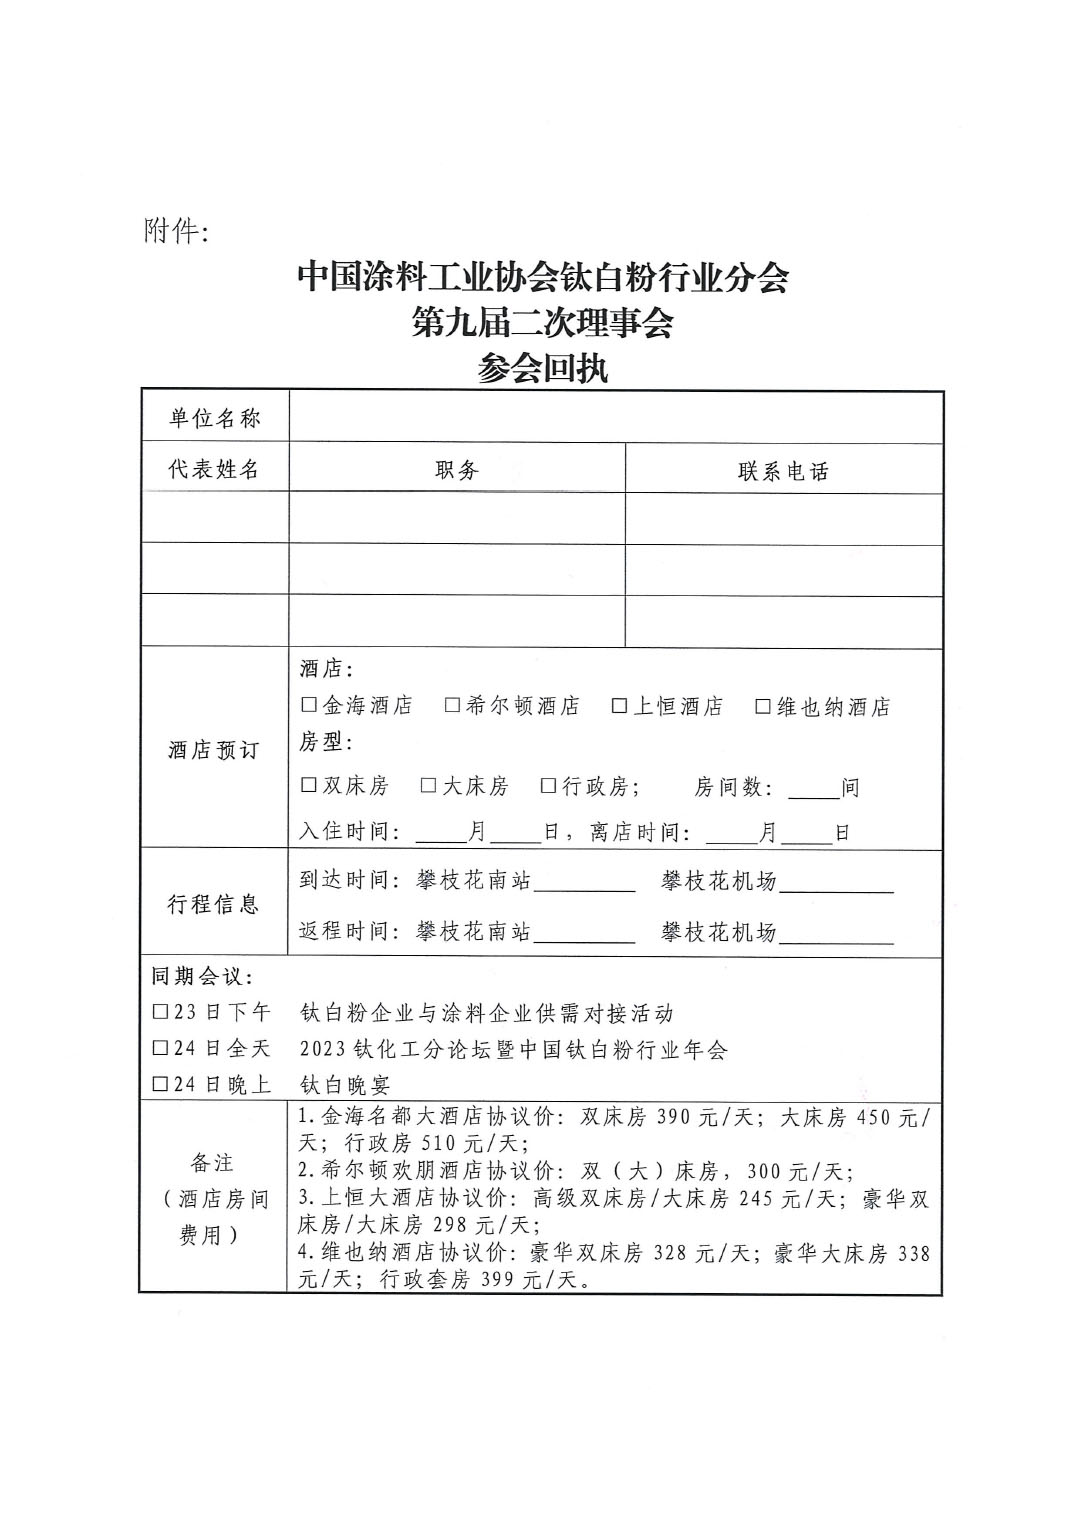 关于召开中国涂料工业协会钛白粉行业分会理事会的通知-3